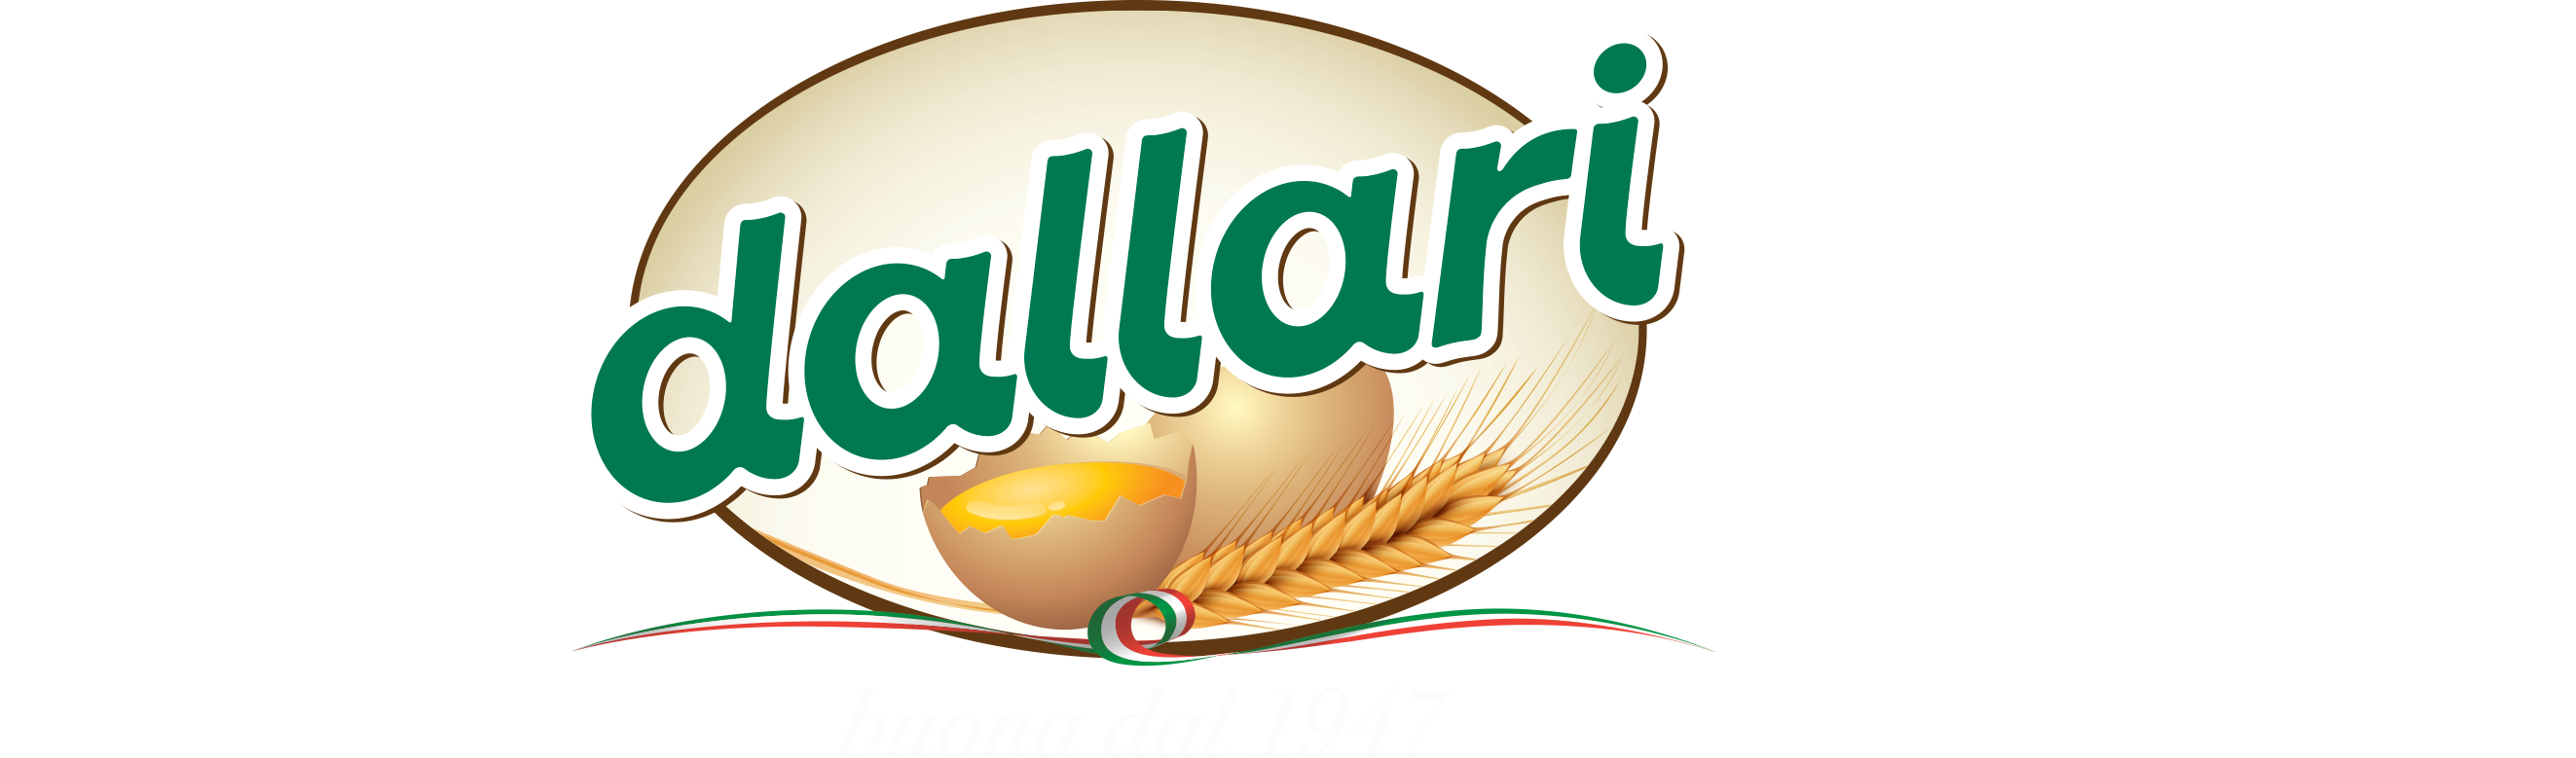 Pasta Dallari